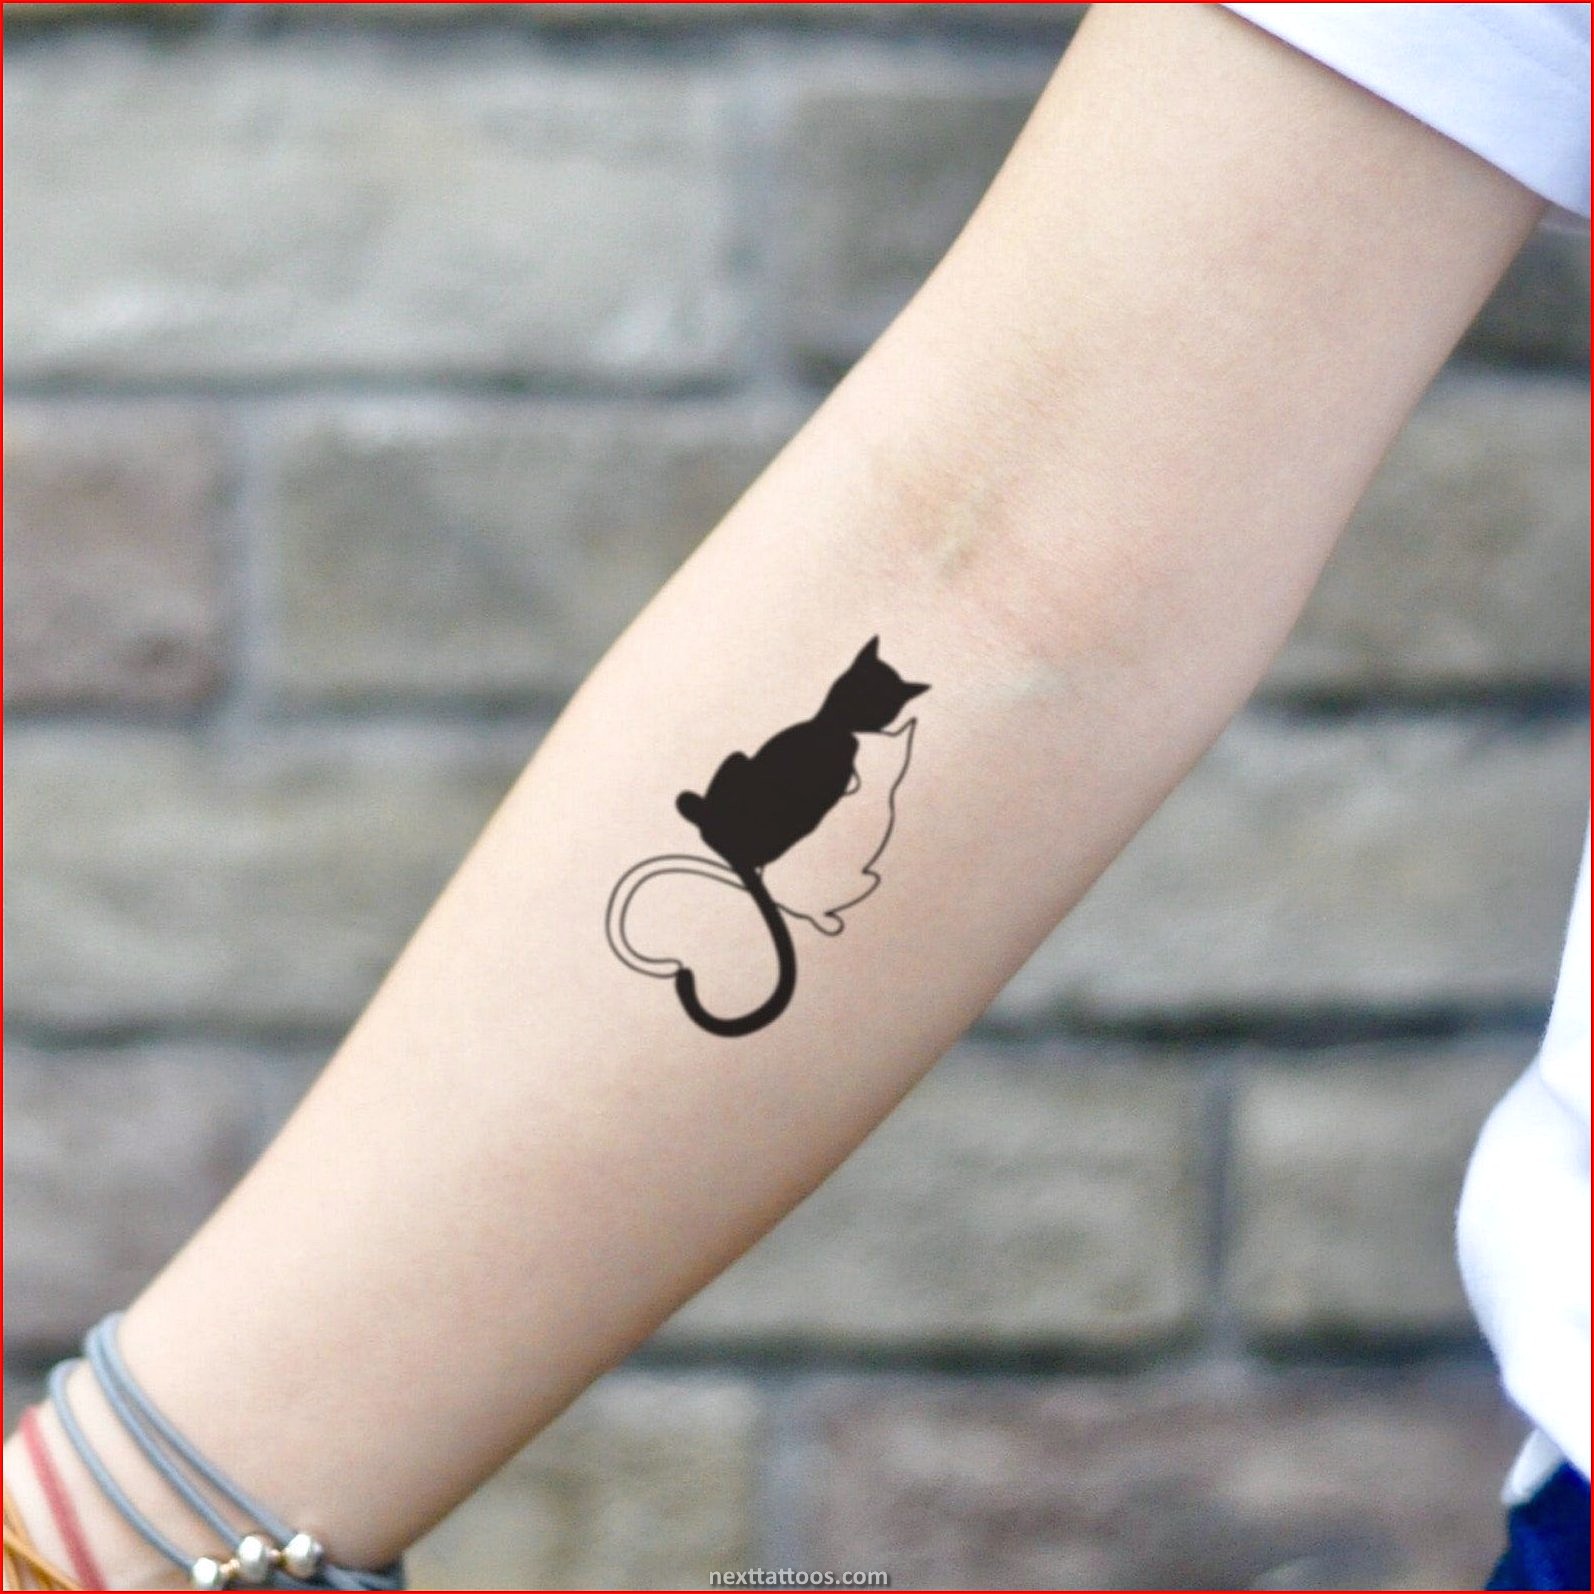 Animal Print Temporary Tattoos